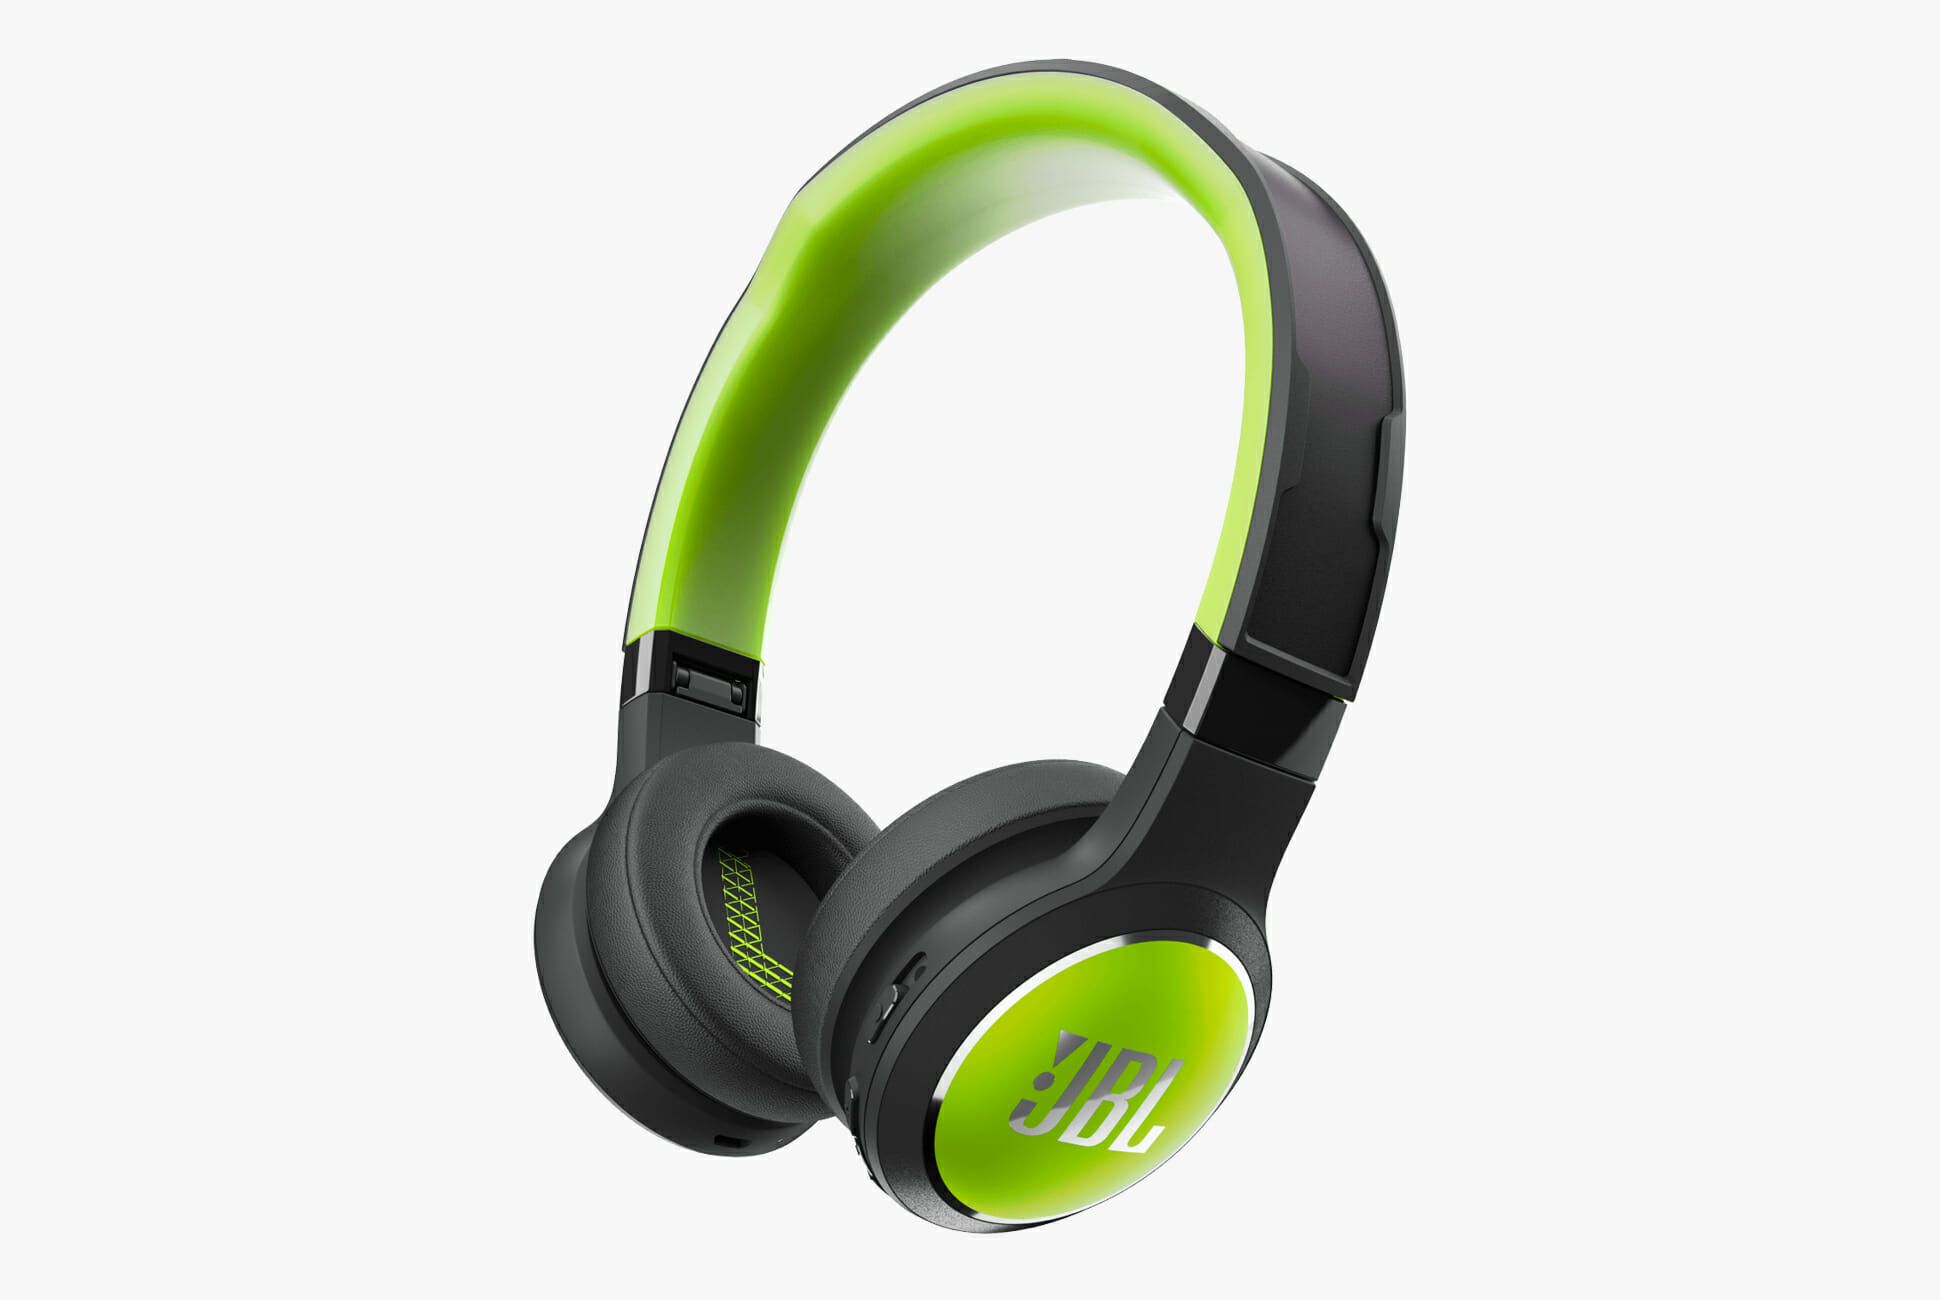 Green and black JBL headphone